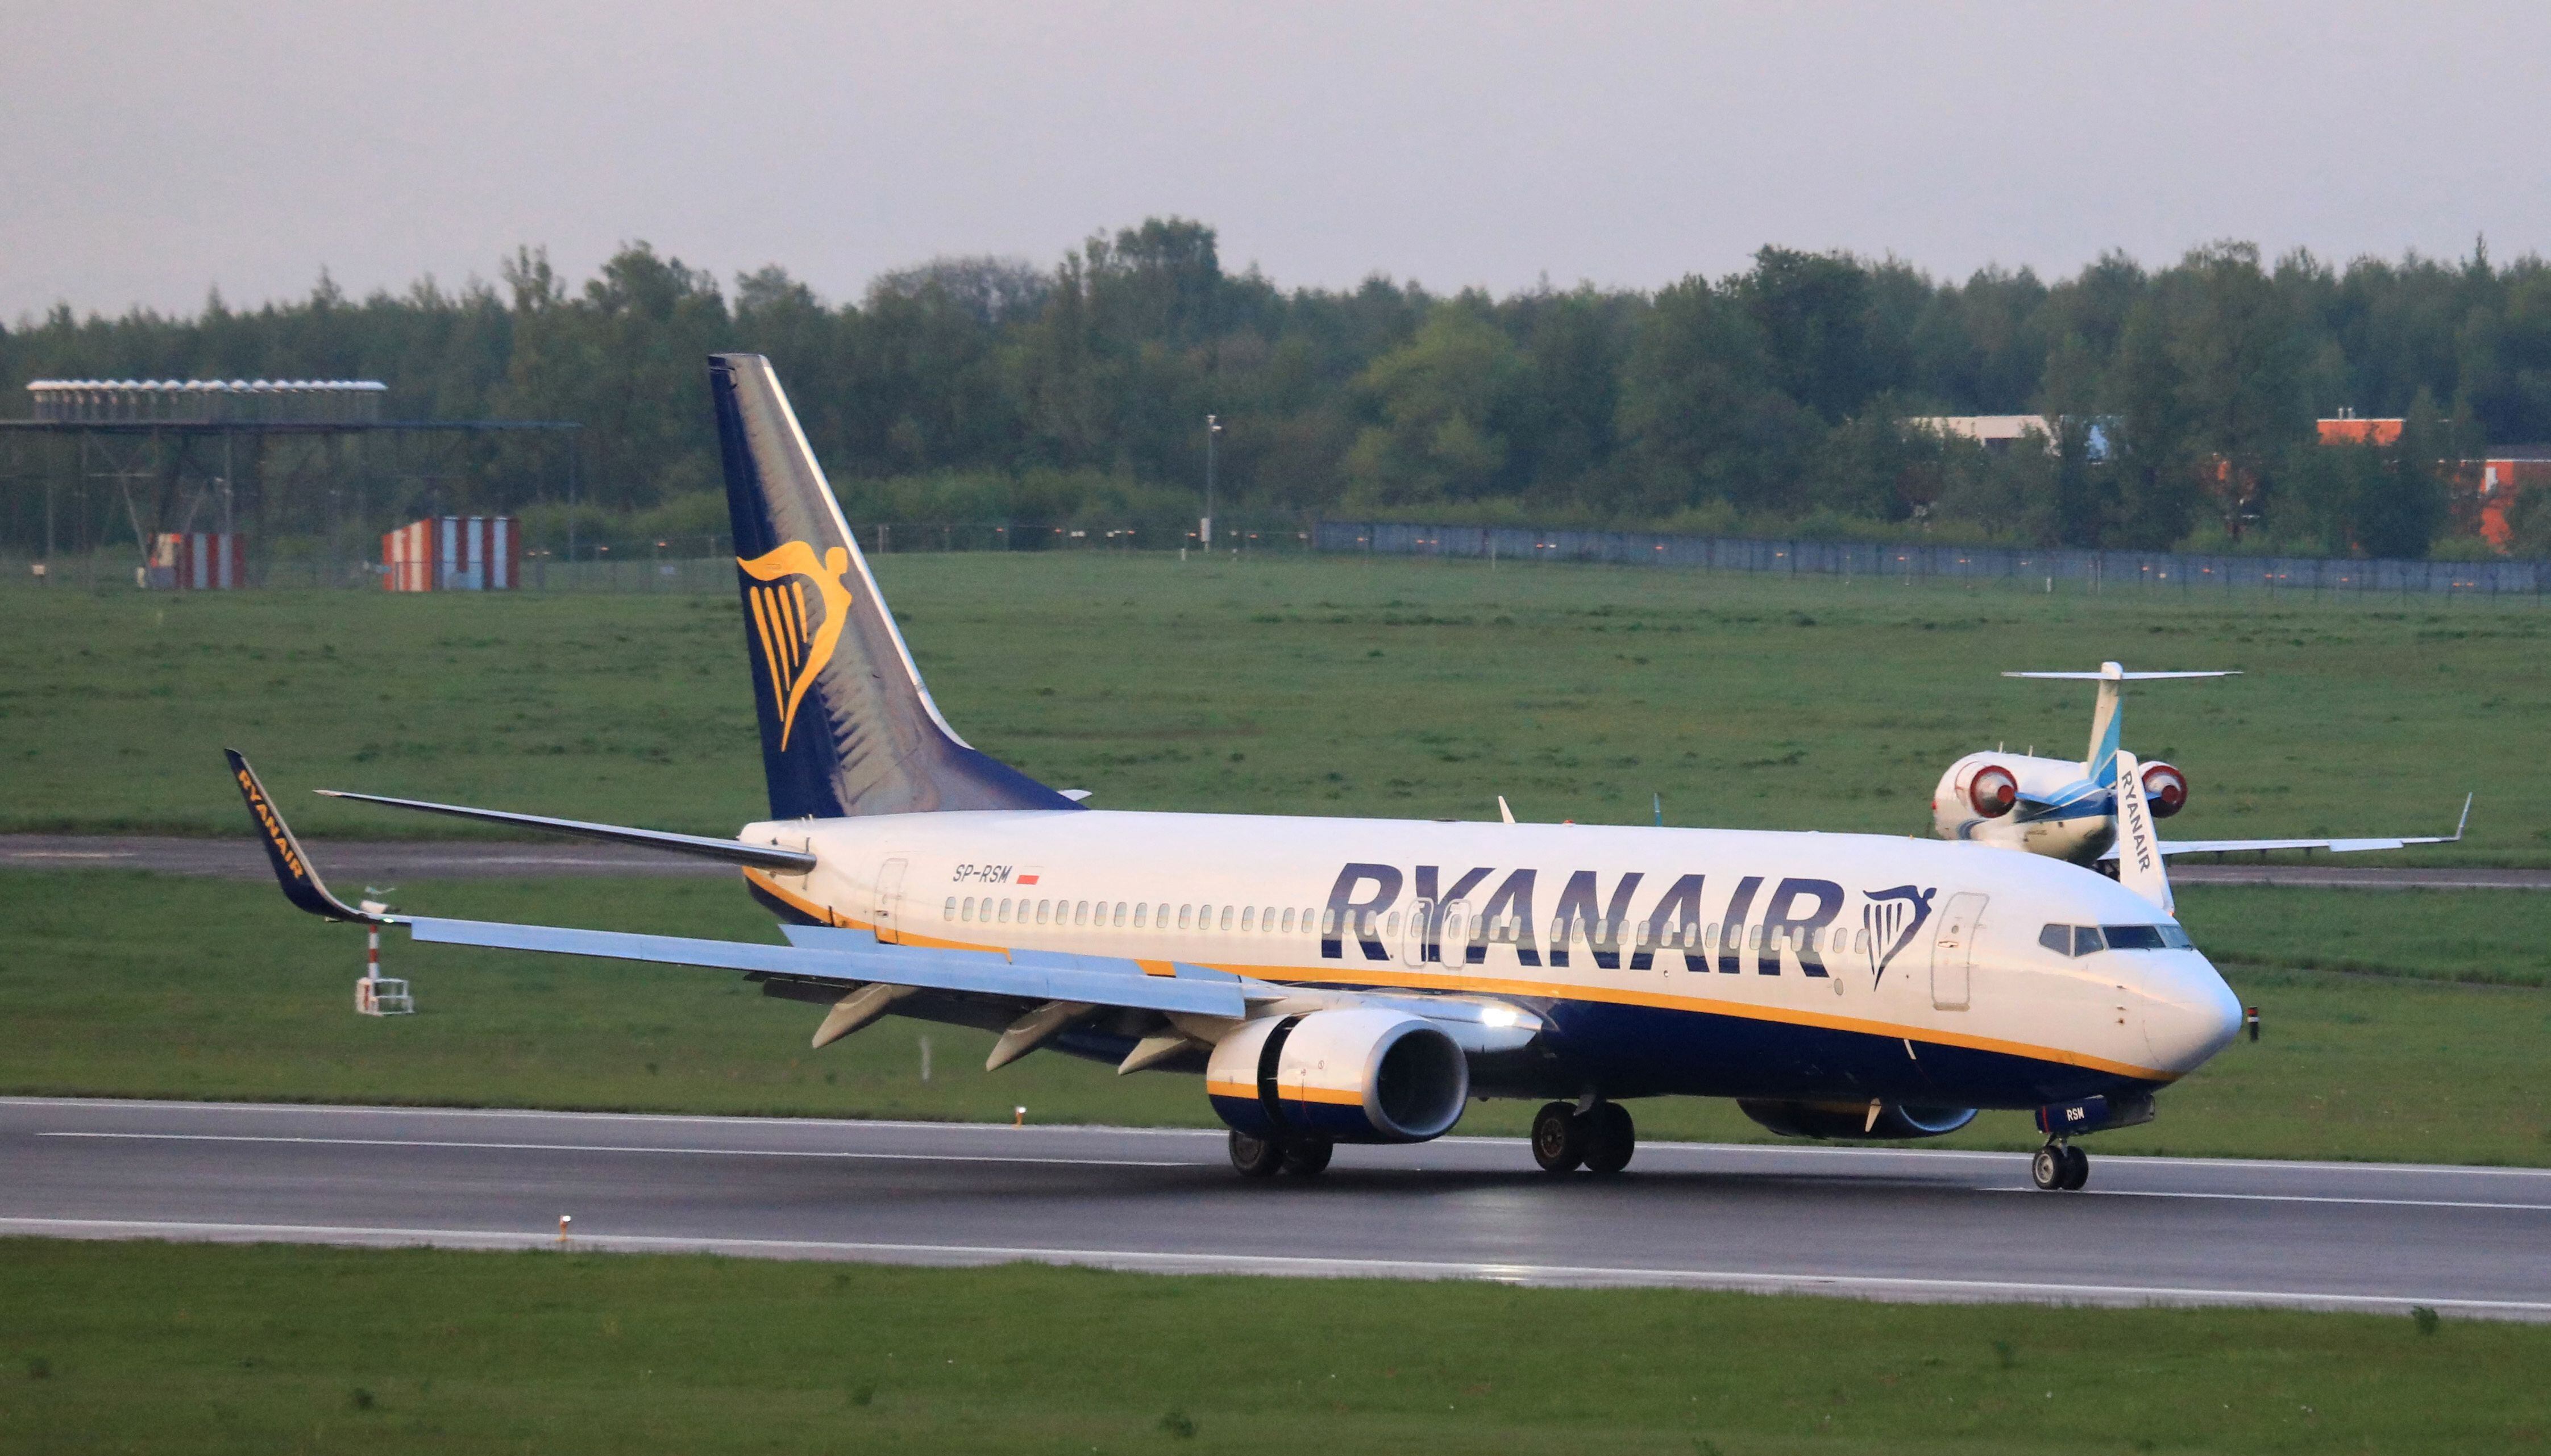 La aerolínea irlandesa especificó que el problema que afectó al avión de Alaska Airlines no se aplica al MAX 8, que es el modelo con el que opera Ryanair.